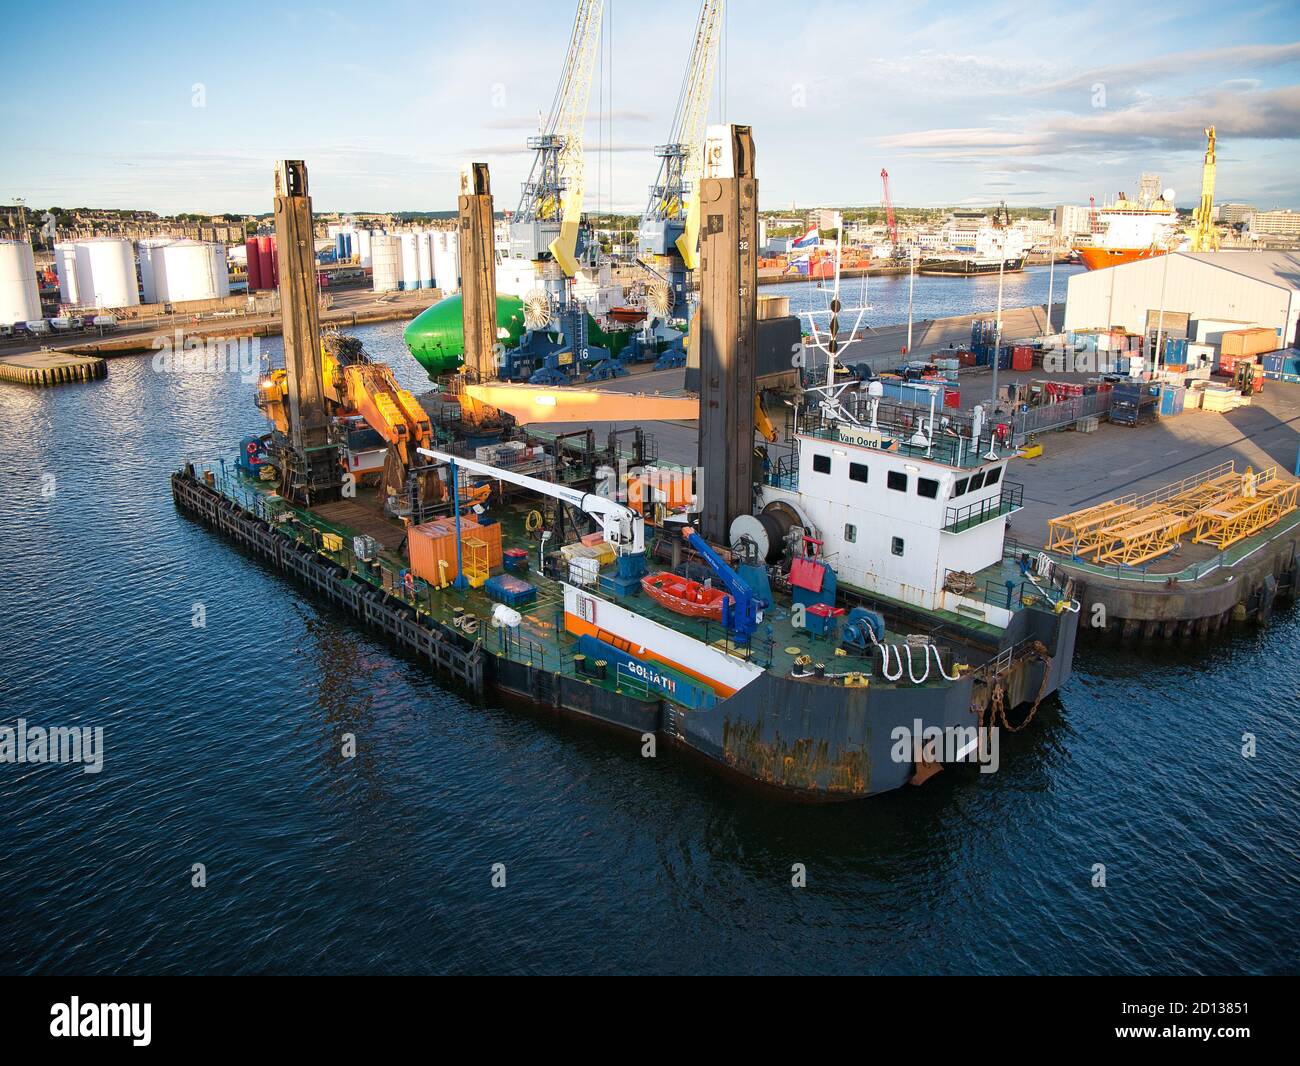 La draga retroescavatore Goliath ormeggiato nel porto di Aberdeen, Scozia, Regno Unito - questa nave è un tipo di attrezzatura meccanica di dragaggio. Foto Stock